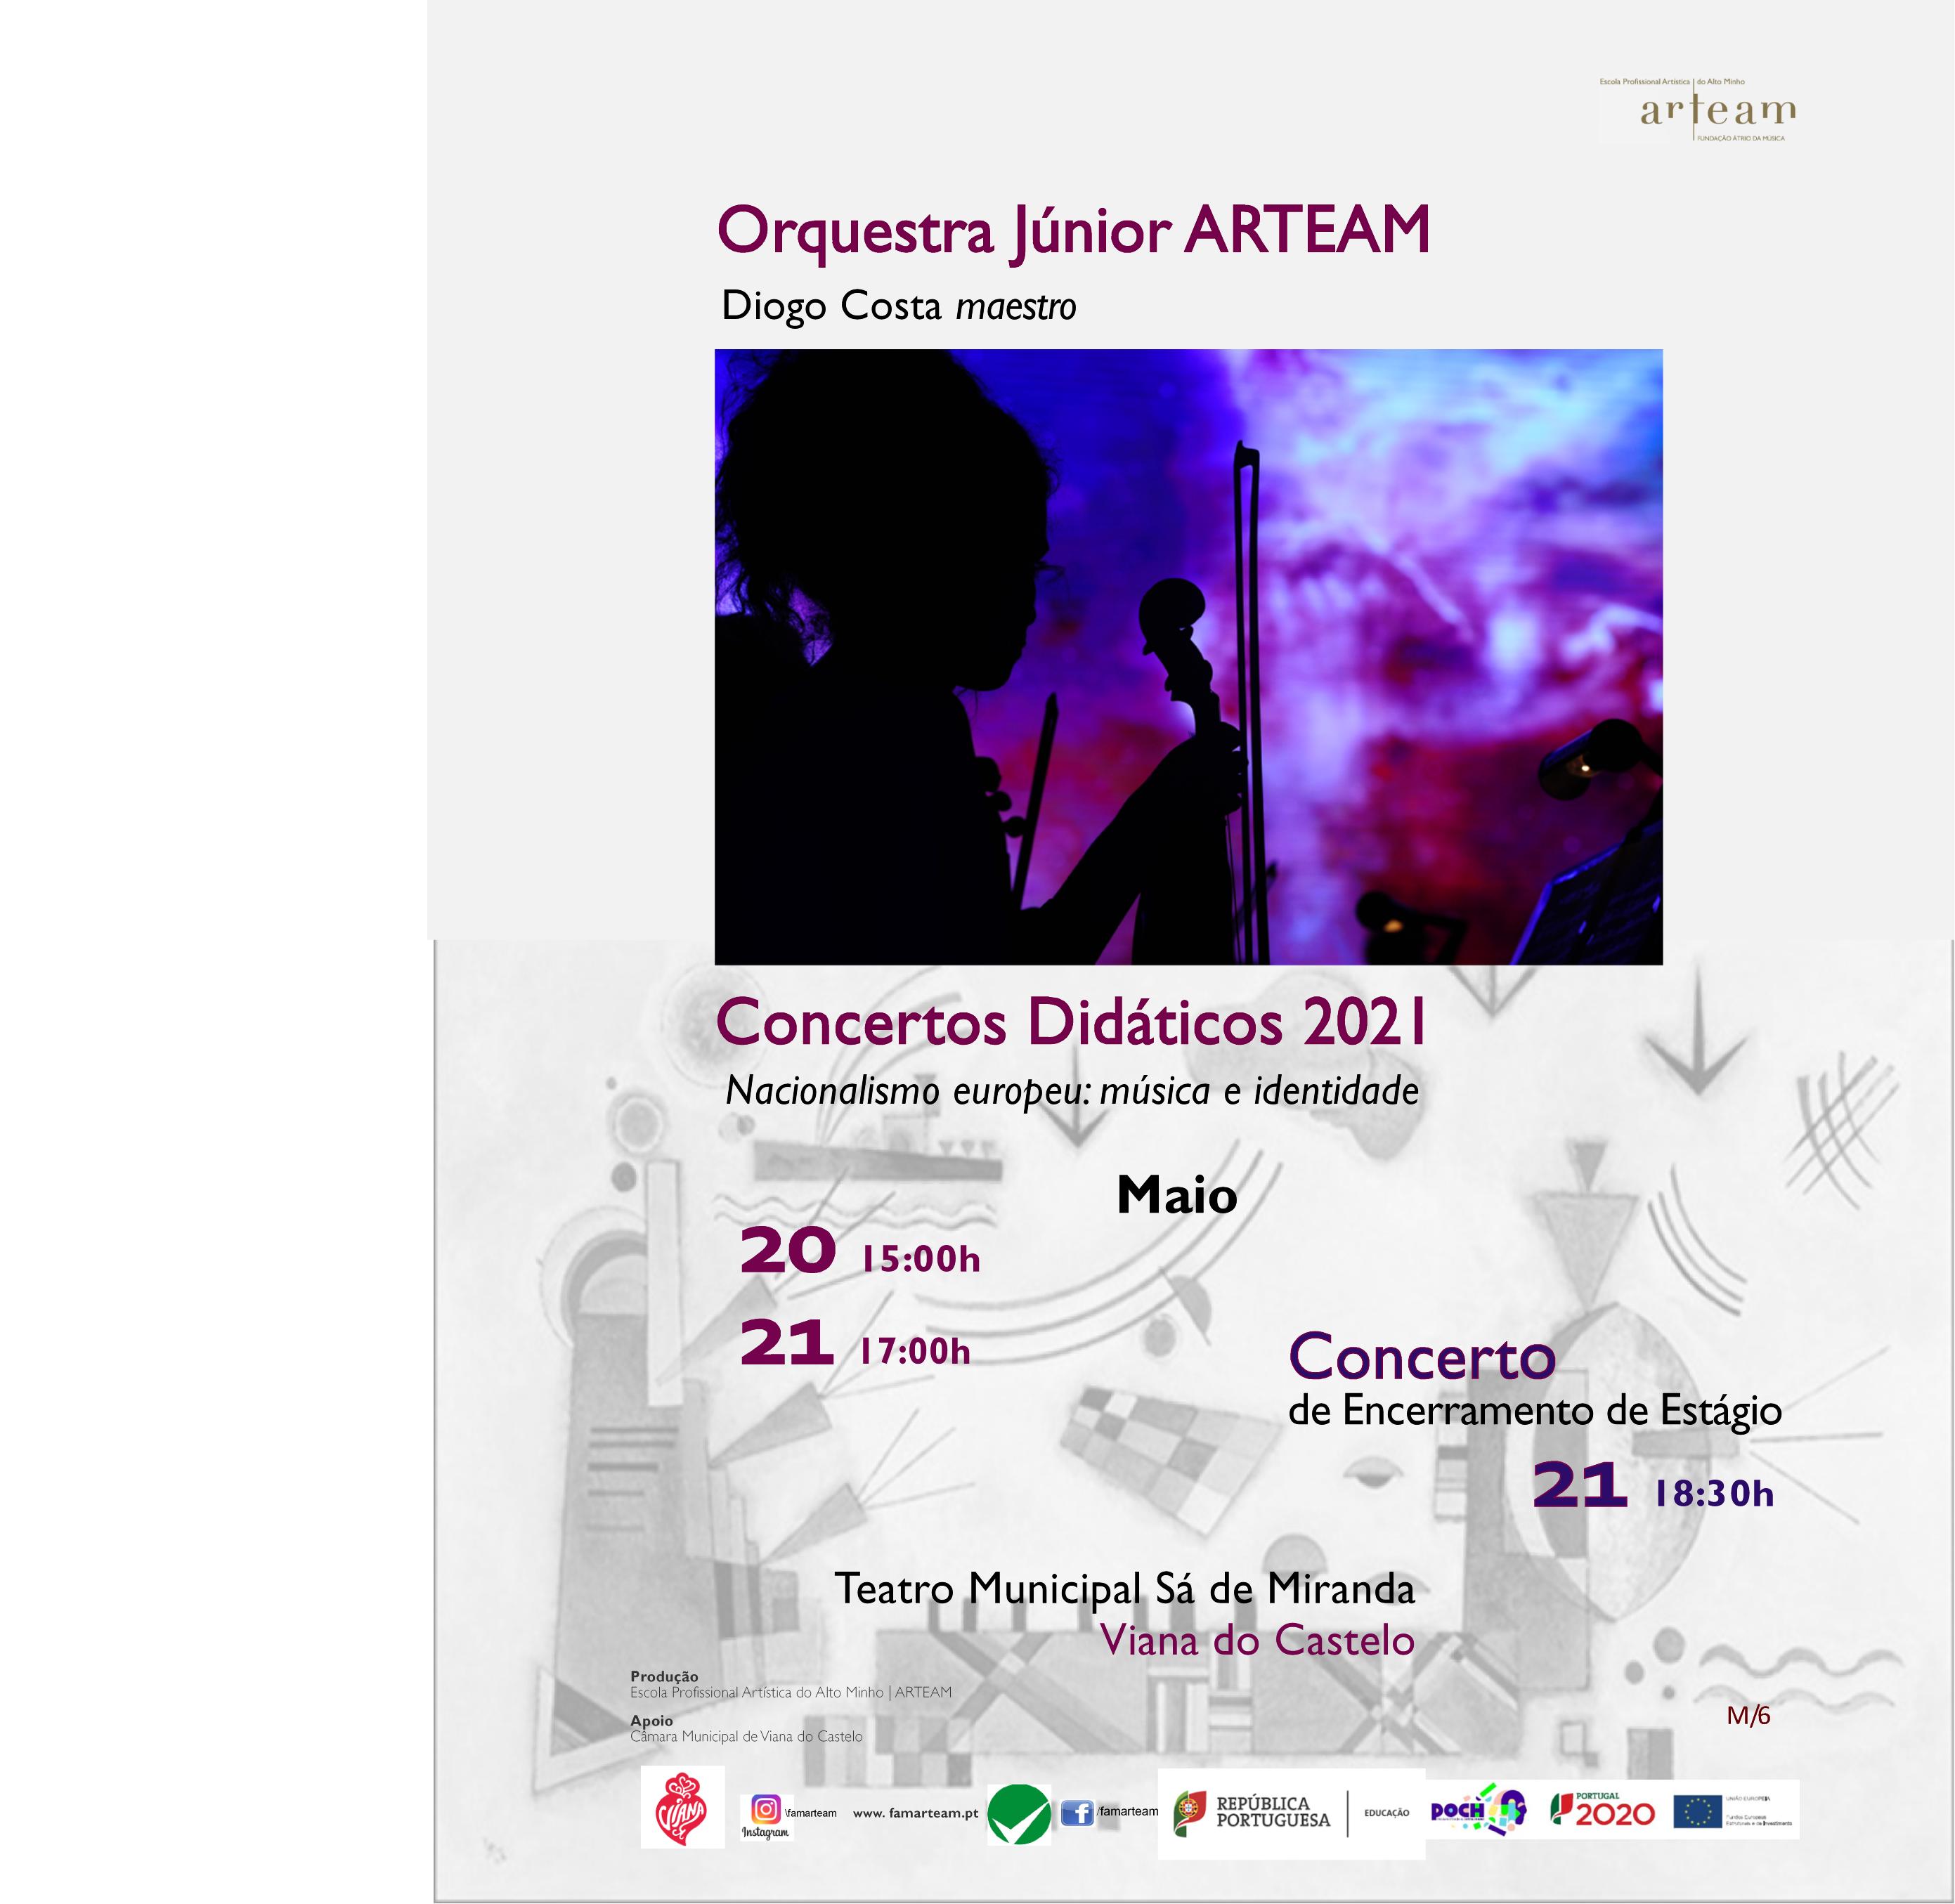 Concerto de encerramento de estágio - Orquestra Júnior ARTEAM